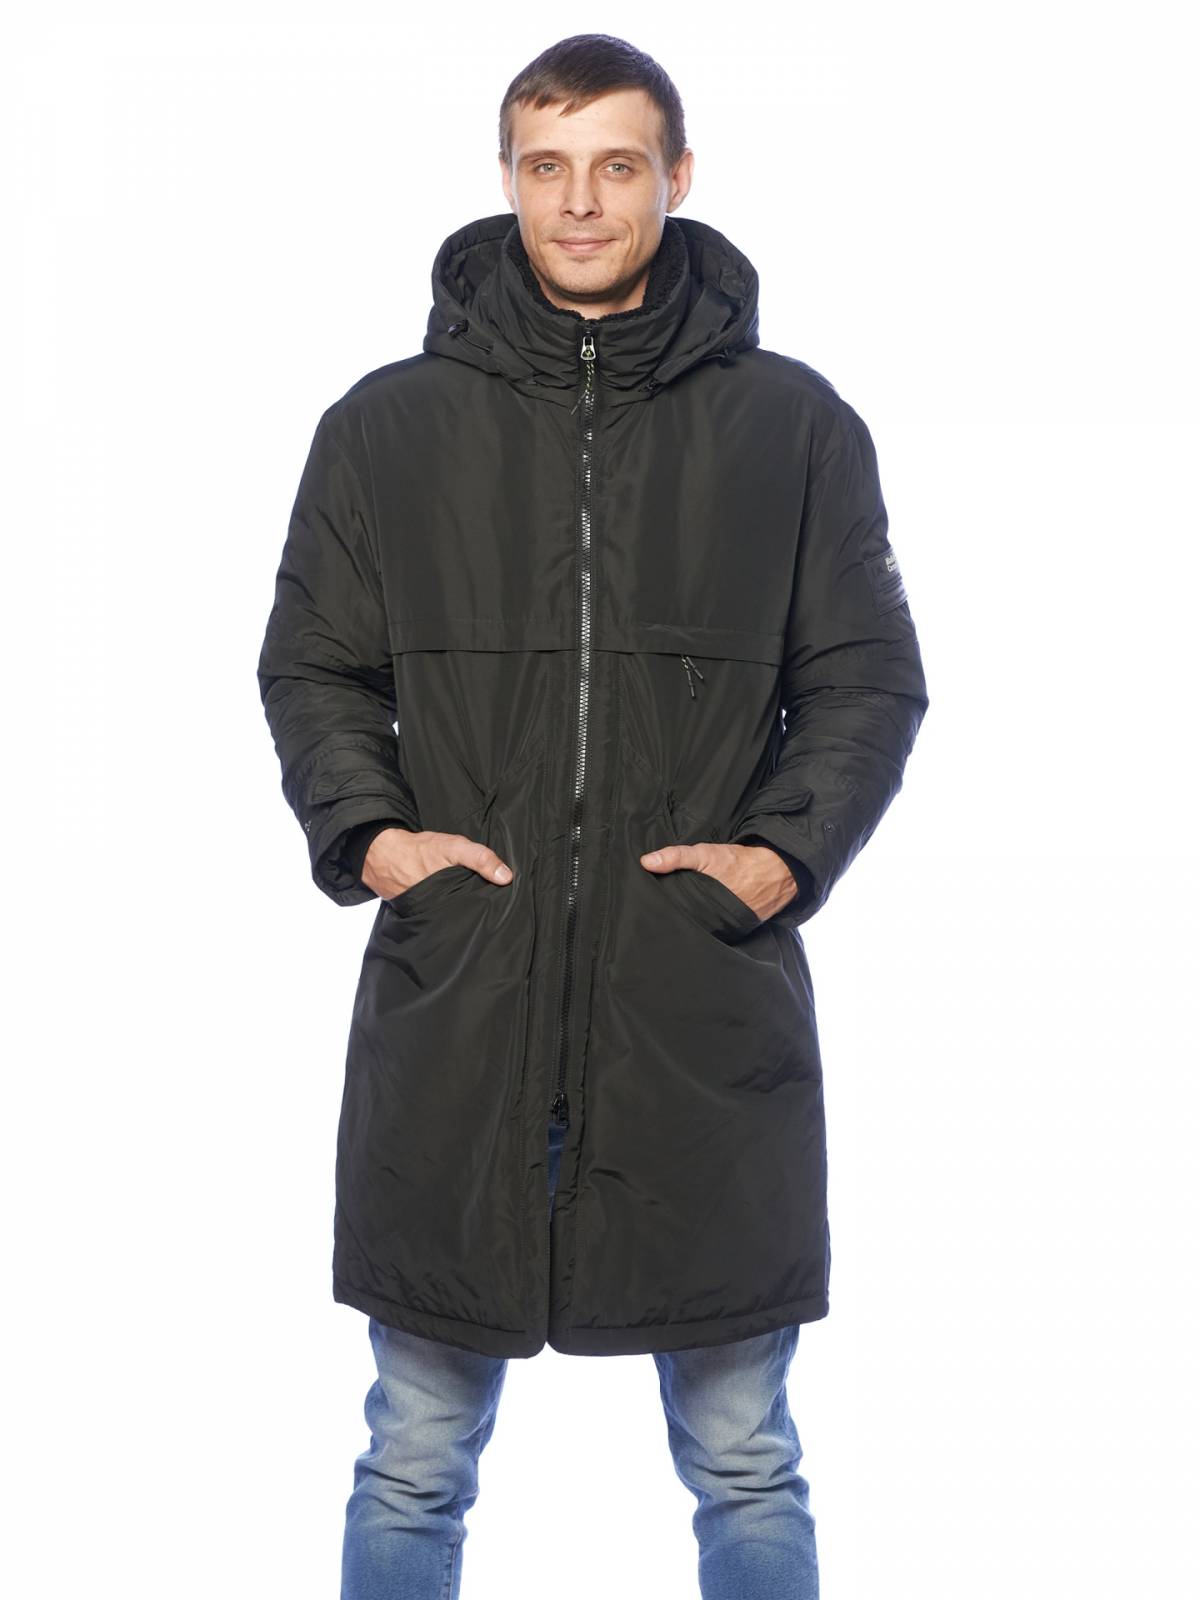 Зимняя куртка мужская Malidinu 3885 серая 52 RU